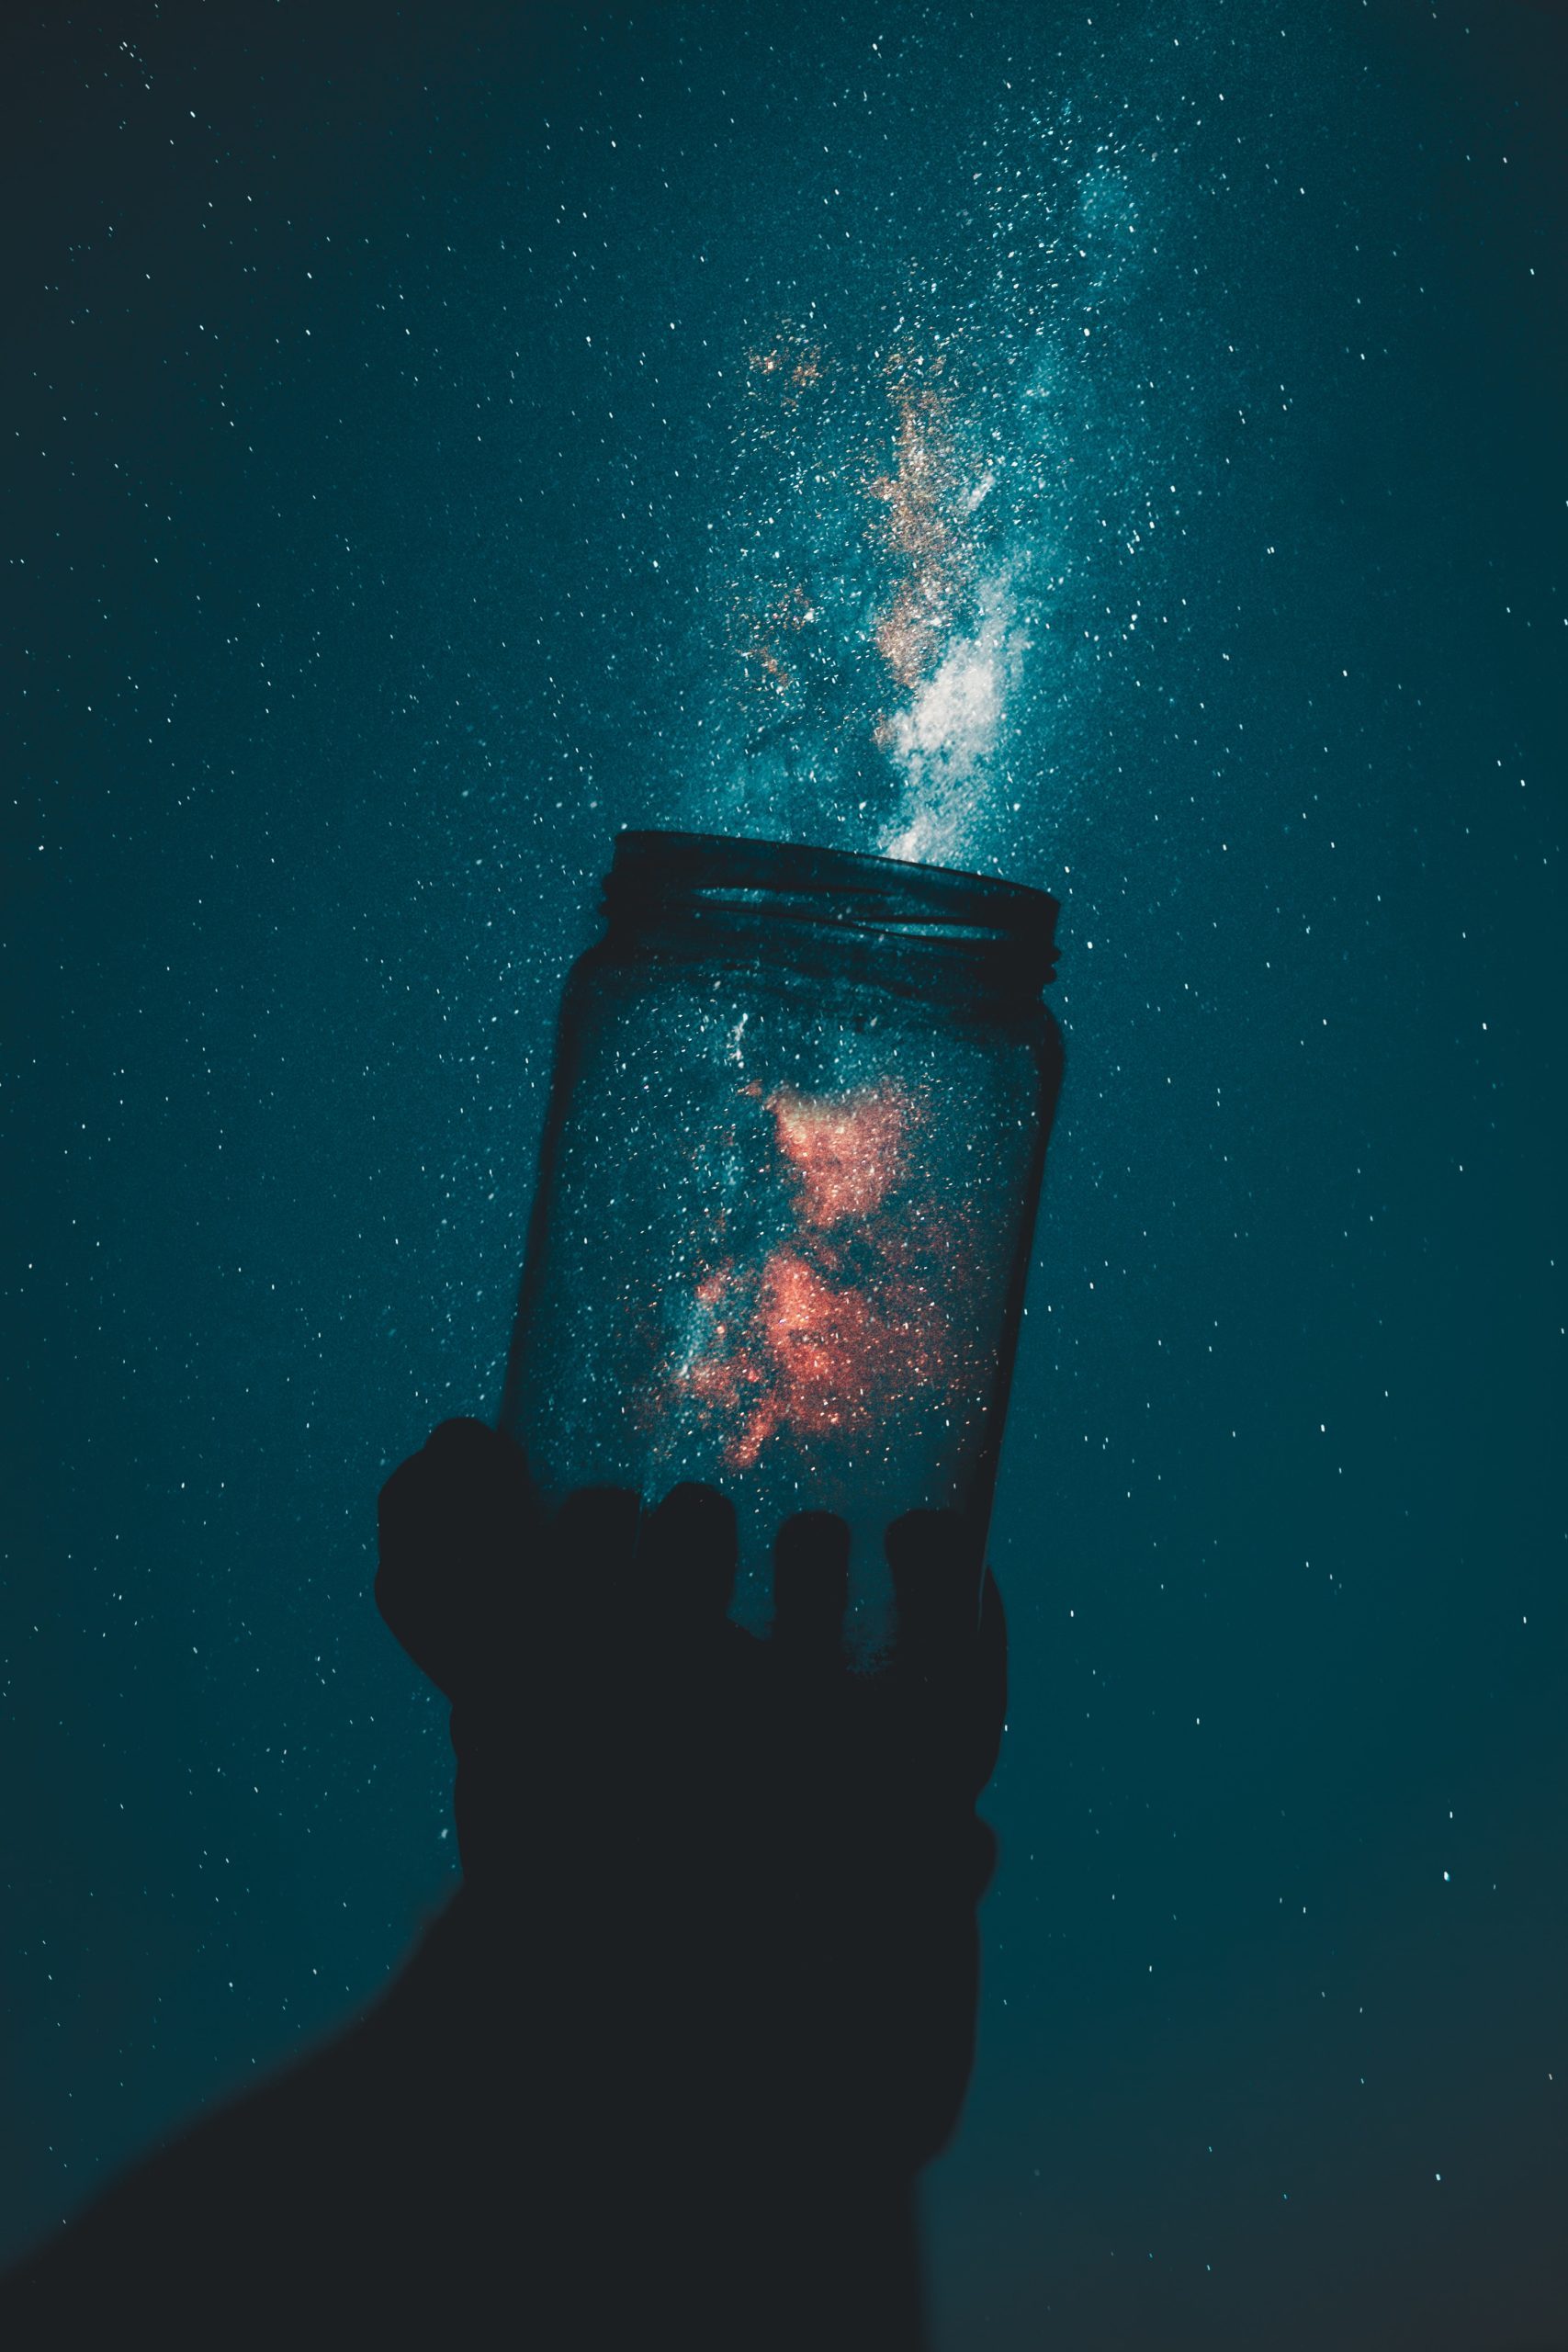 Imagen creativa tomada con un cielo estrellado